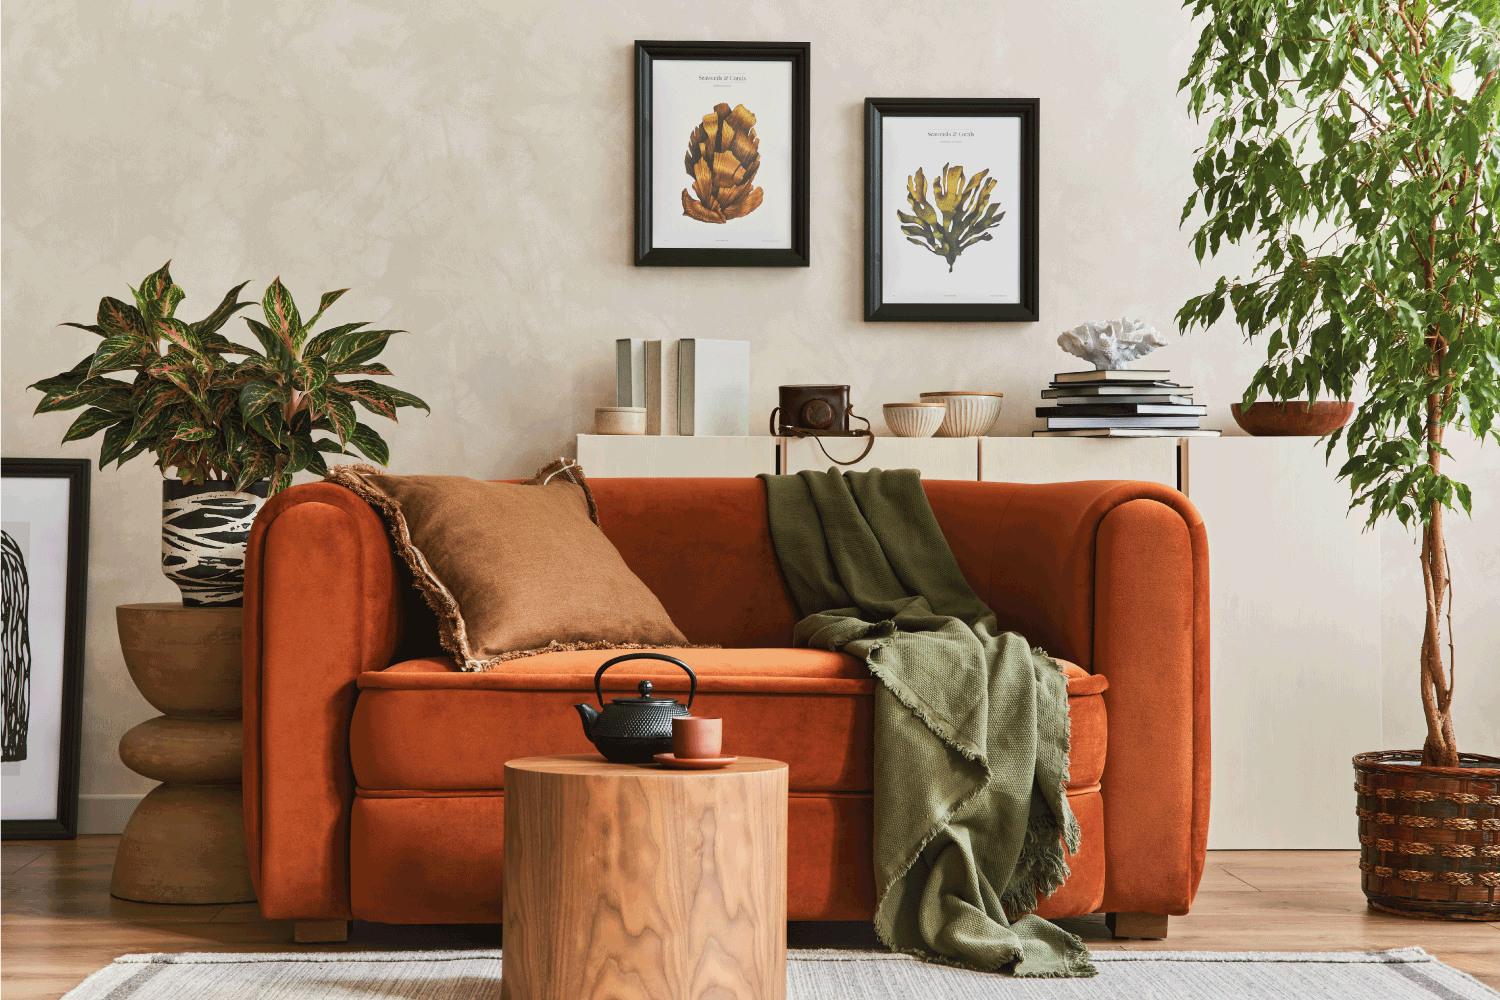 Sofa terakota gelap yang kontras dengan warna dasar dinding beige muda, via homedecorbliss